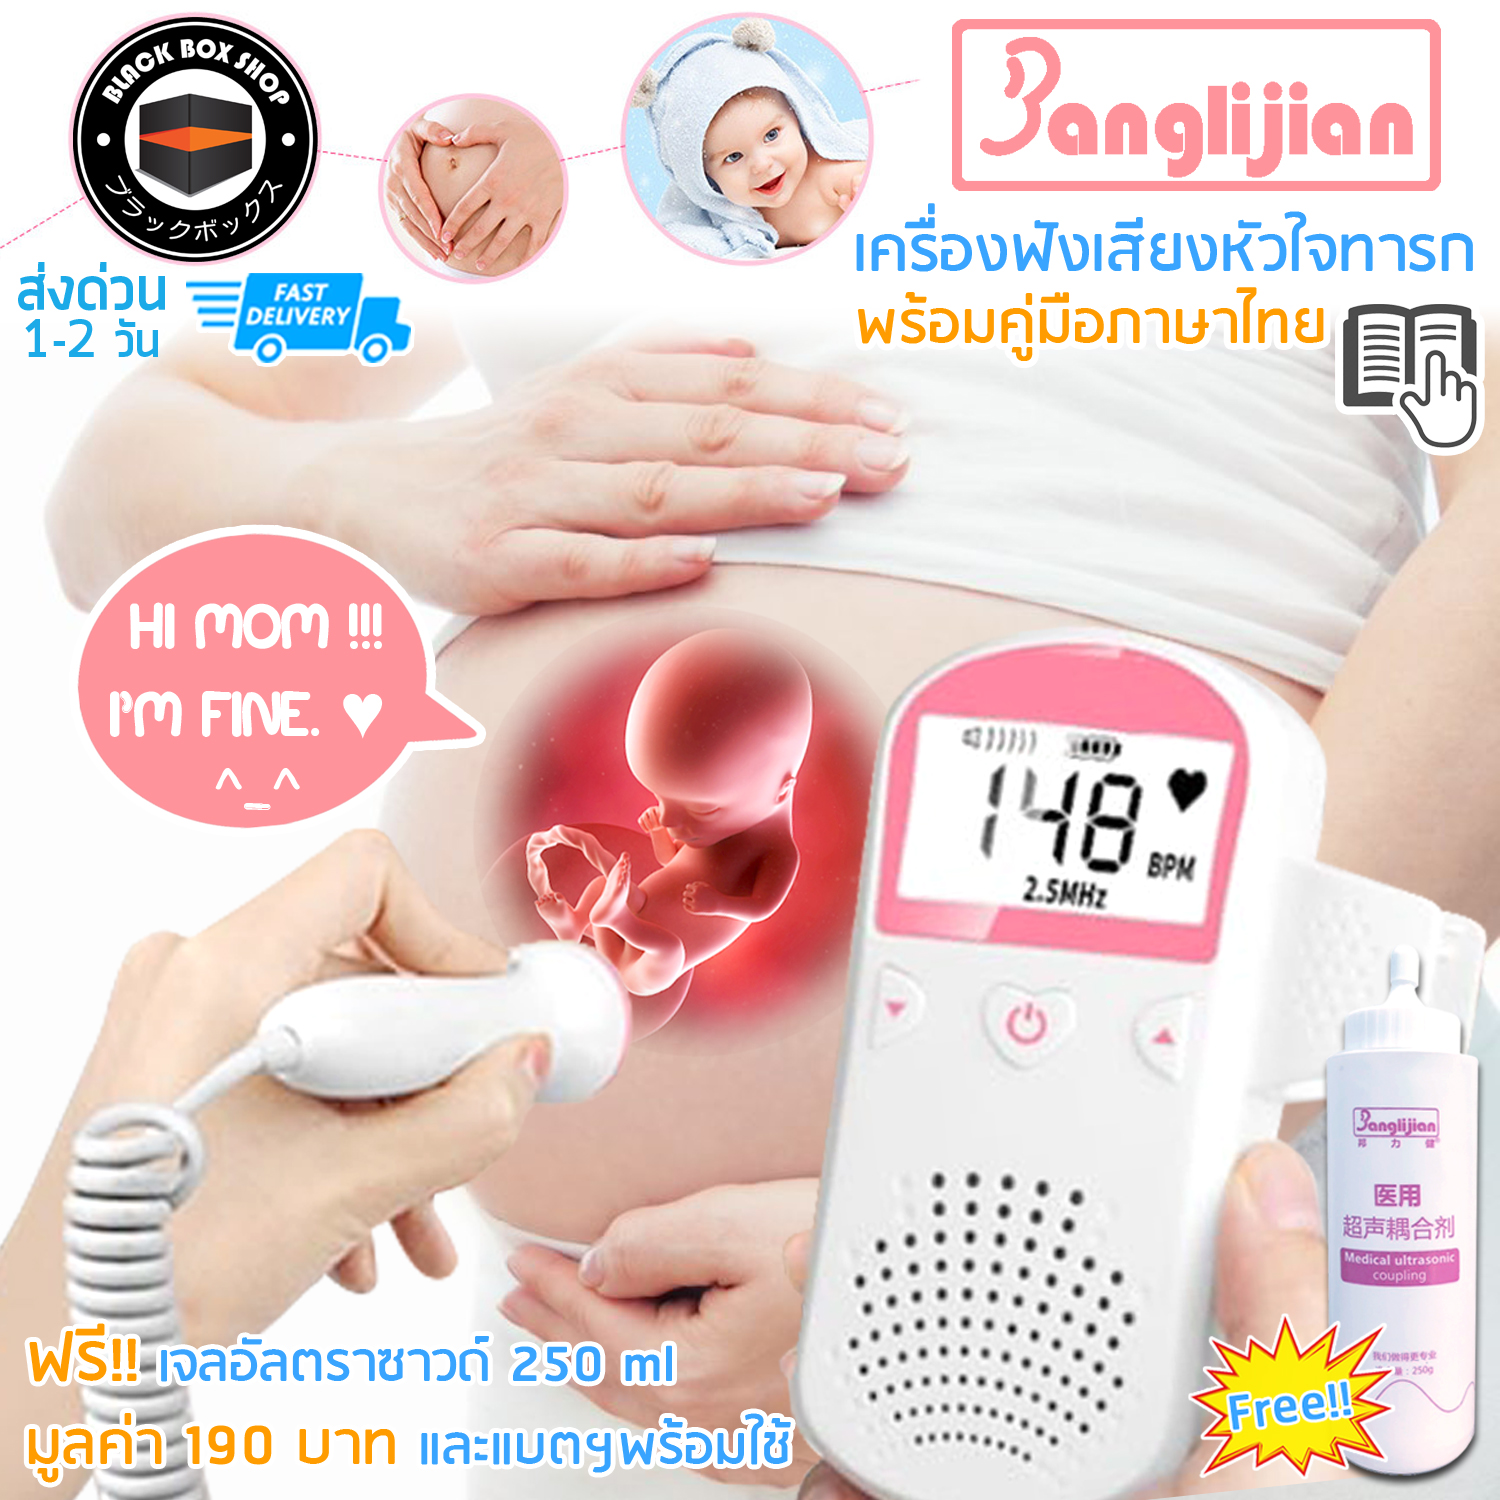 ซื้อที่ไหน Banglijian เครื่องฟังหัวใจ เครื่องฟังเสียงหัวใจทารก ในครรภ์ เครื่องฟังเสียงอัลตร้าซาวด์ Doppler fetal adoring แถมฟรี!!! เจลอัลตร้าซาวด์ ขนาด 250 ml พร้อมคู่มือภาษาไทย